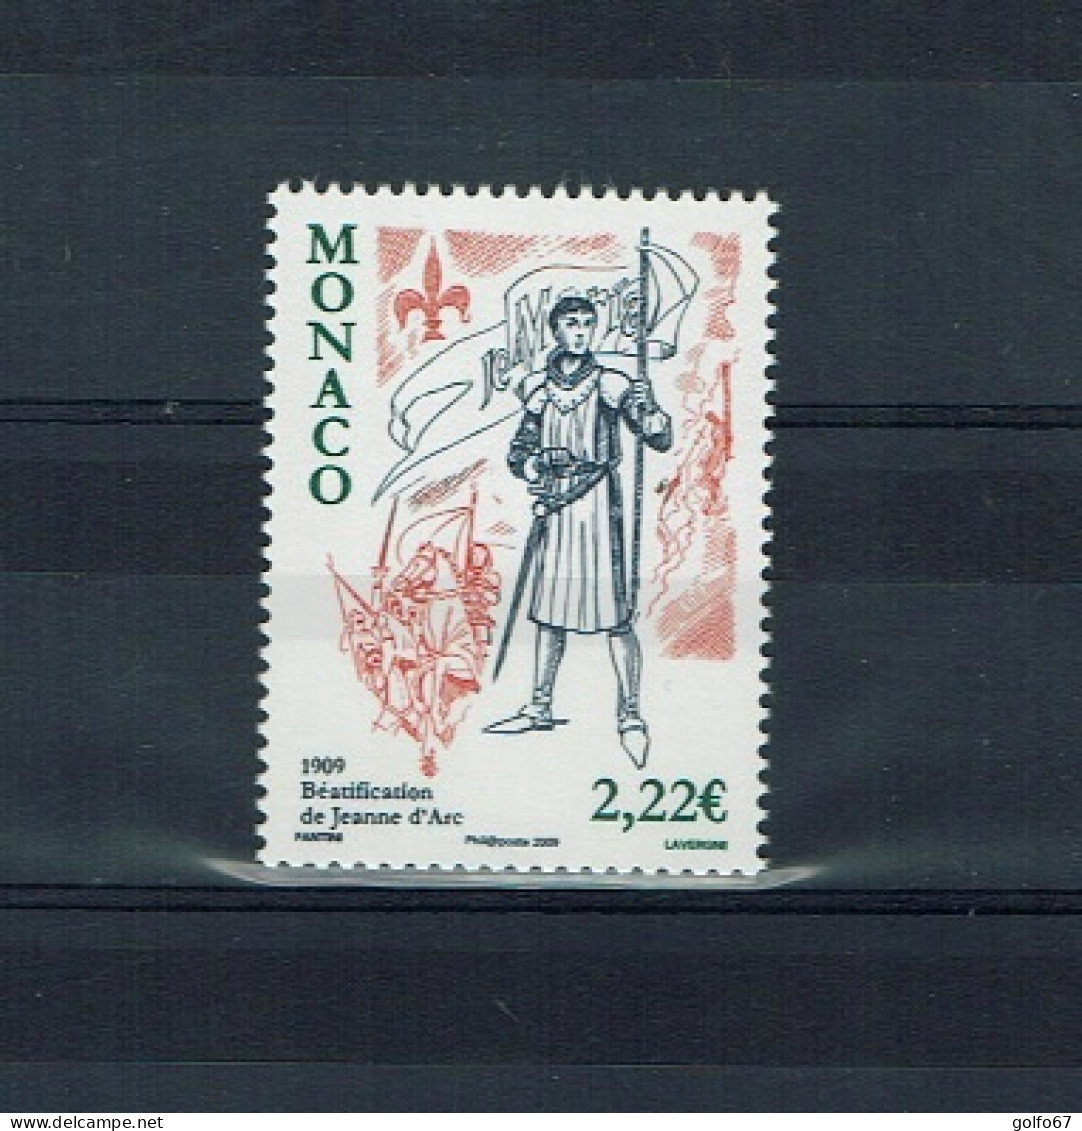 MONACO 2009 Y&T N° 2663 NEUF** - Unused Stamps